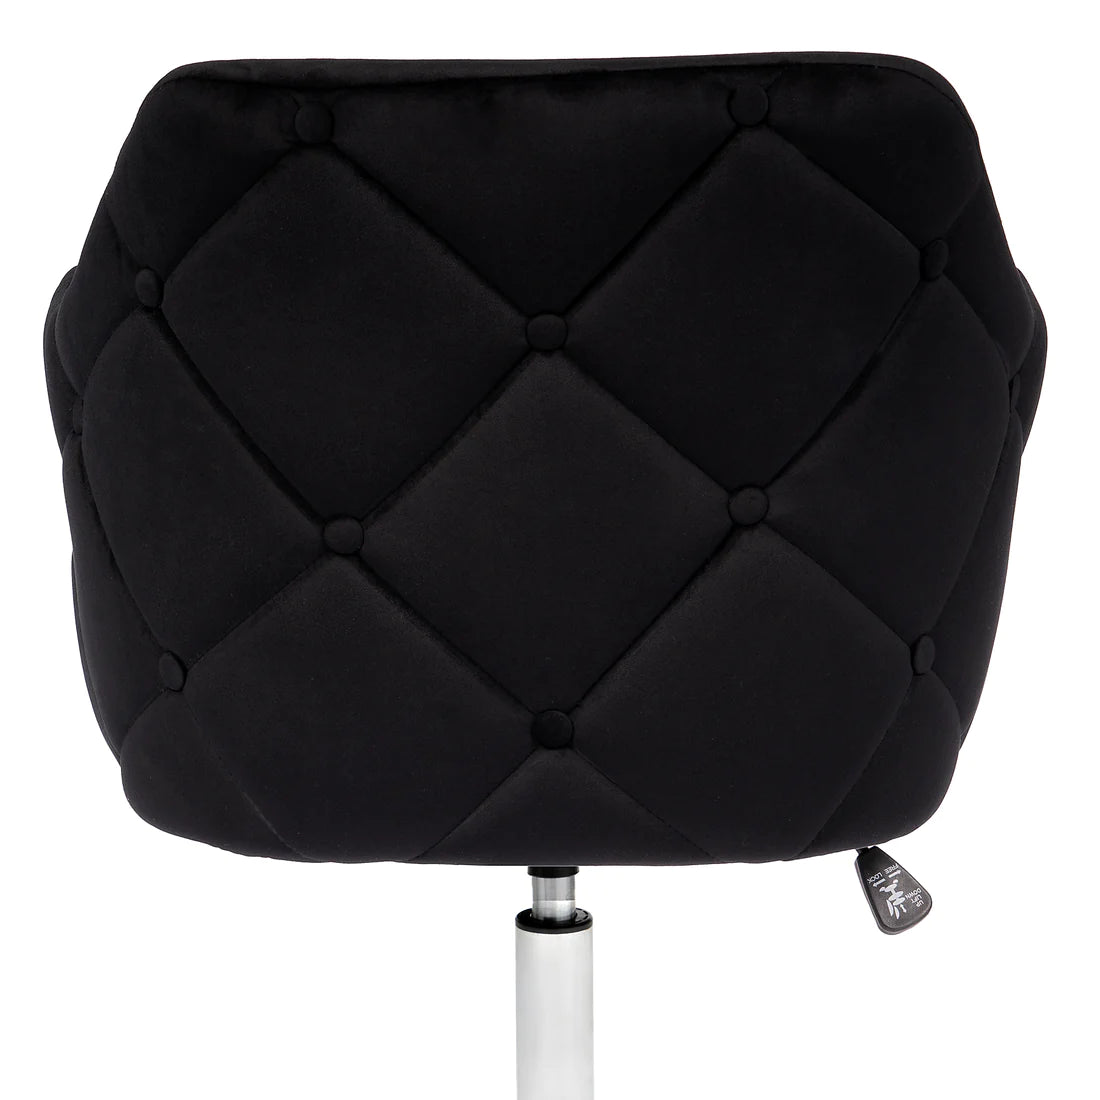 Pearl Tufted Office Chair (Black Velvet)